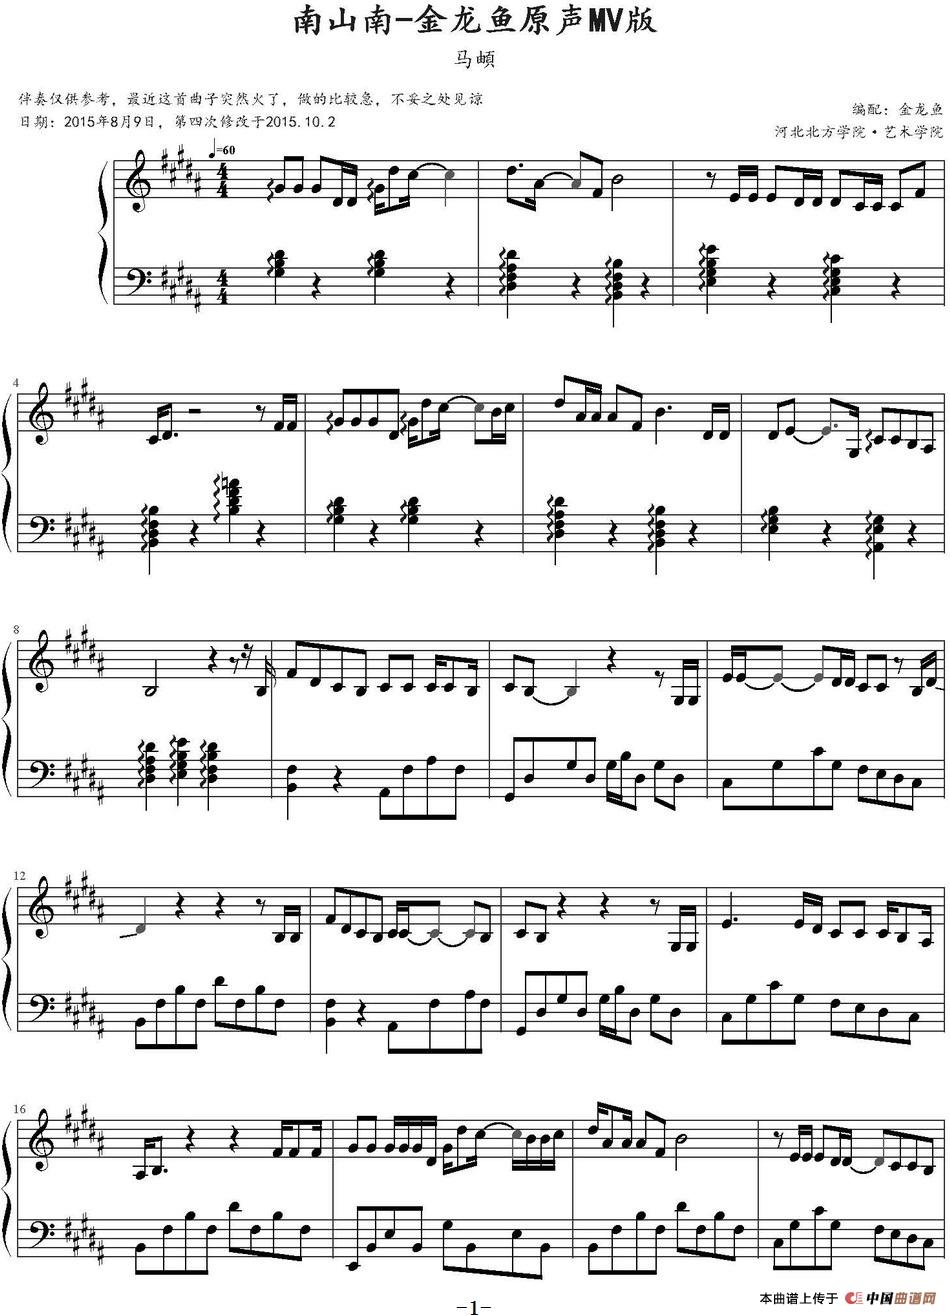 《南山南》钢琴曲谱图分享